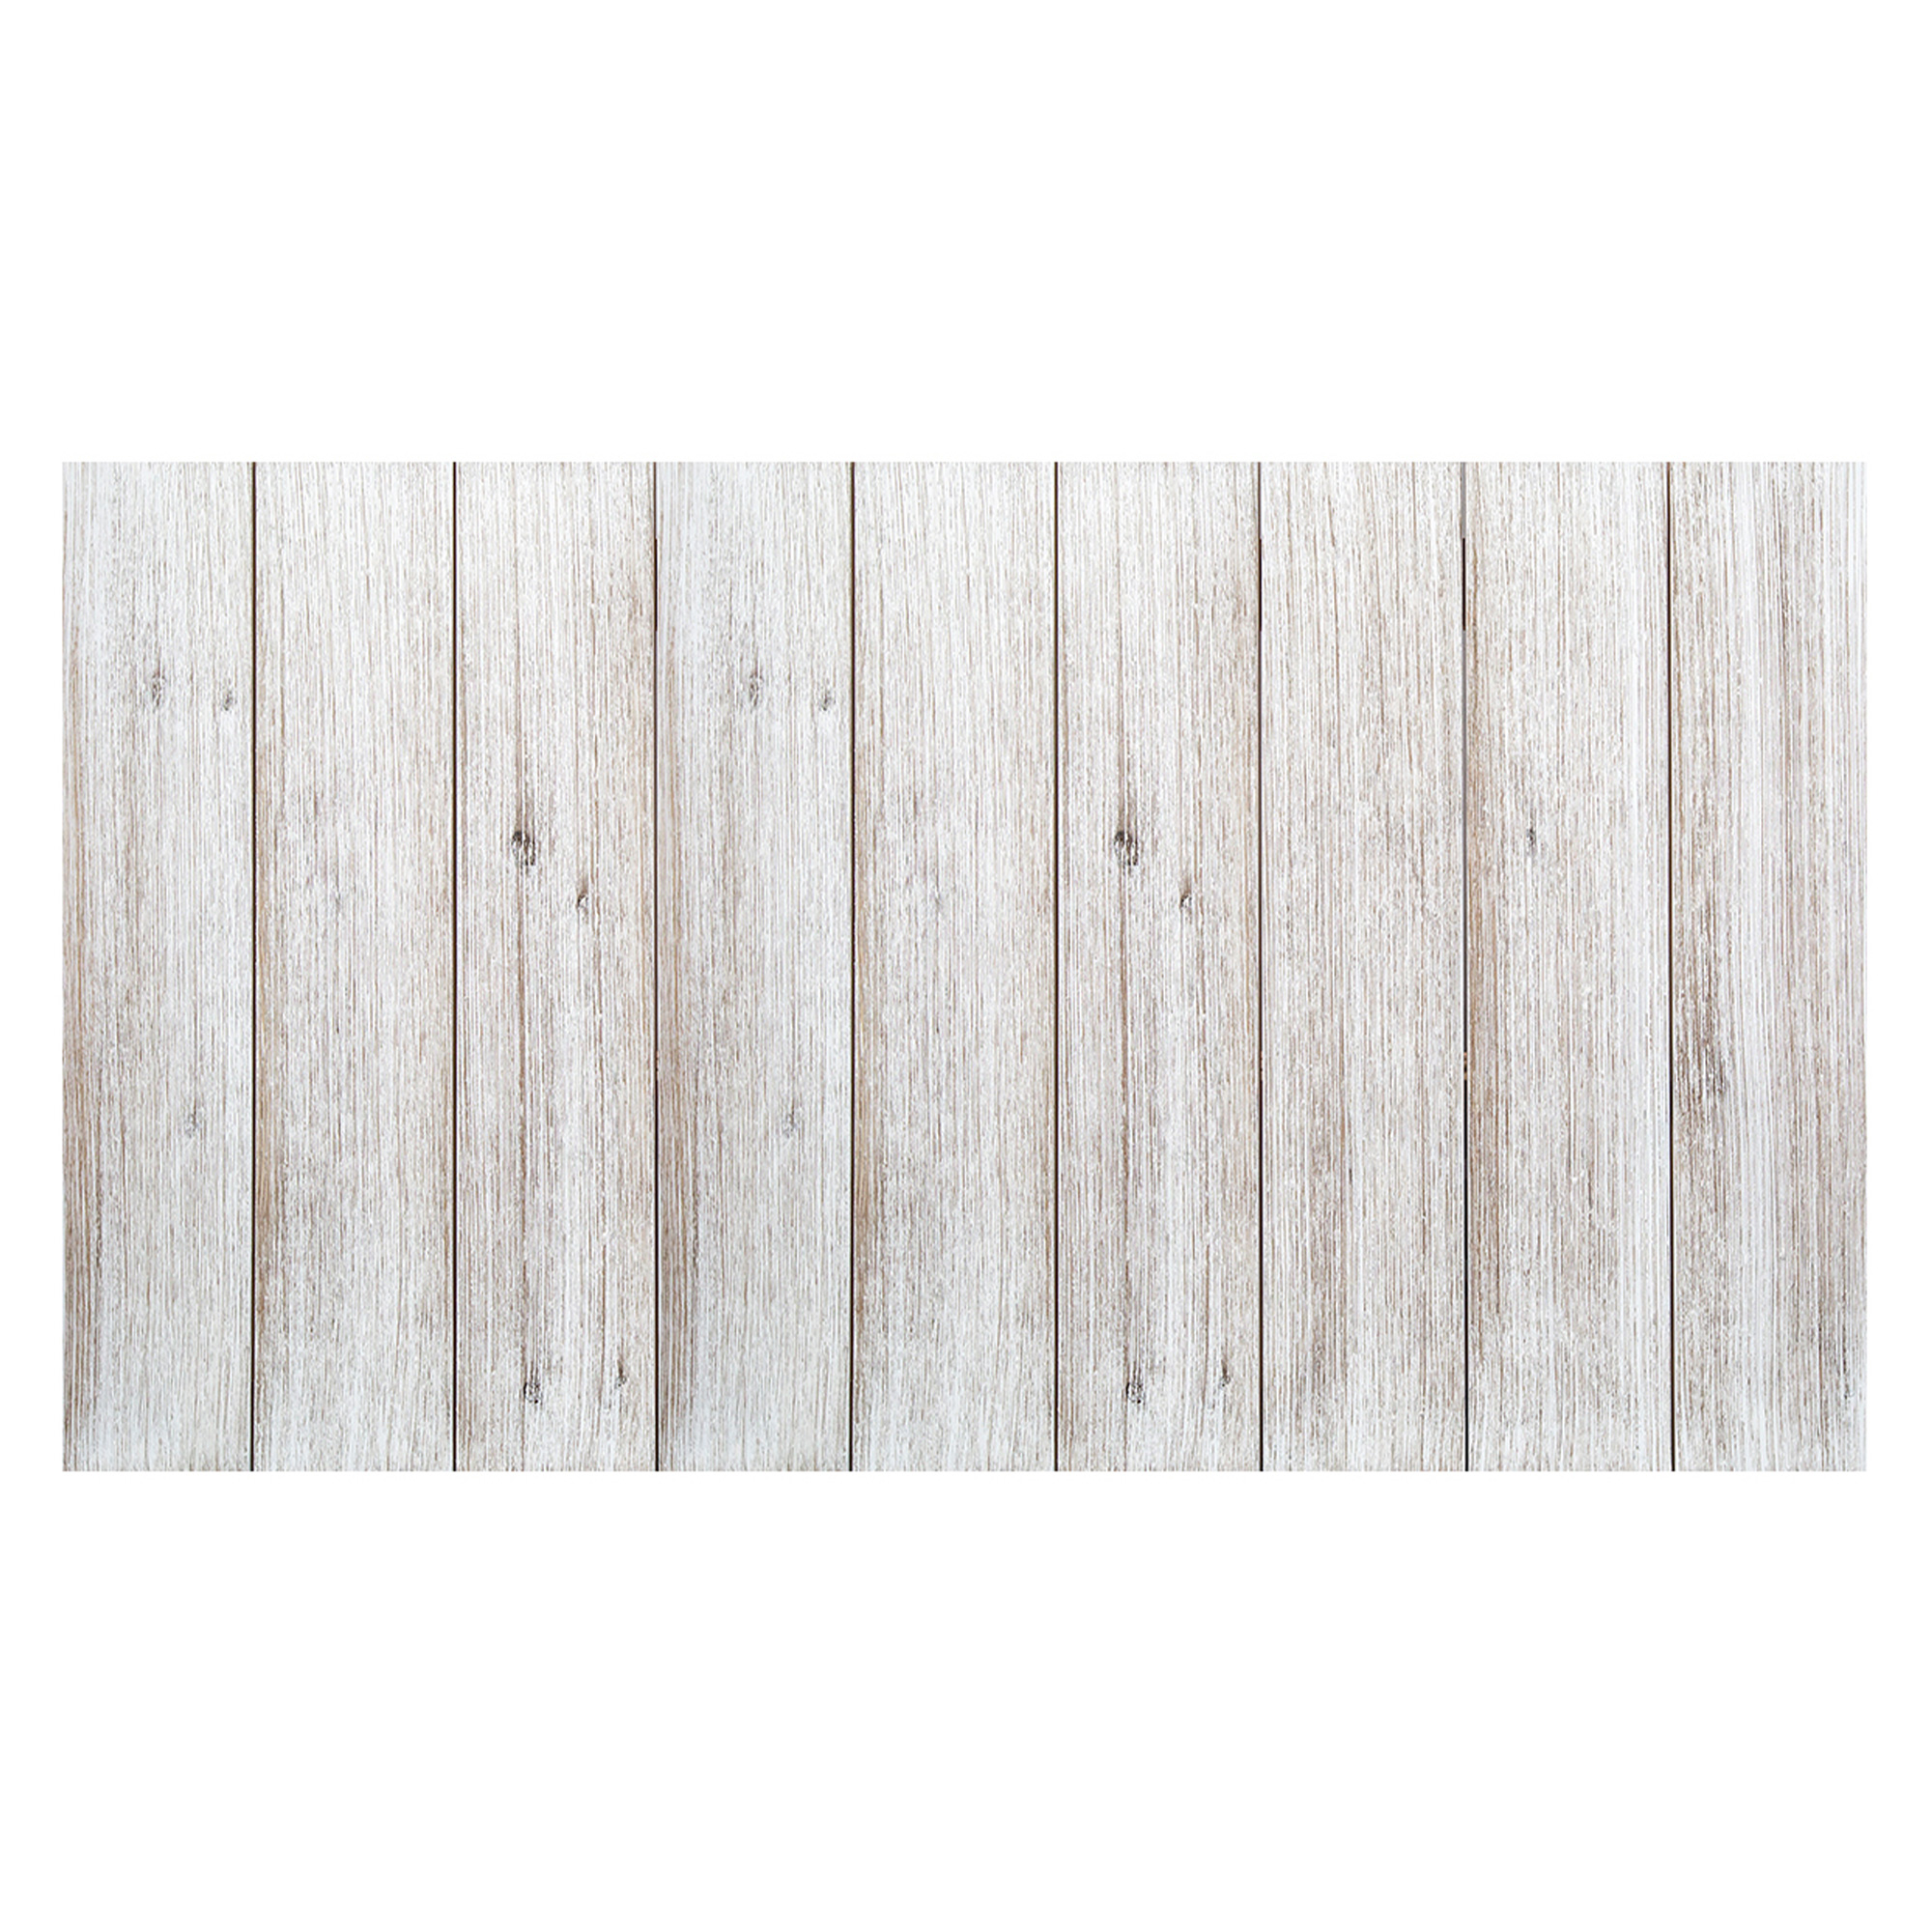 Tête de lit en bois vintage blanche 160x80cm